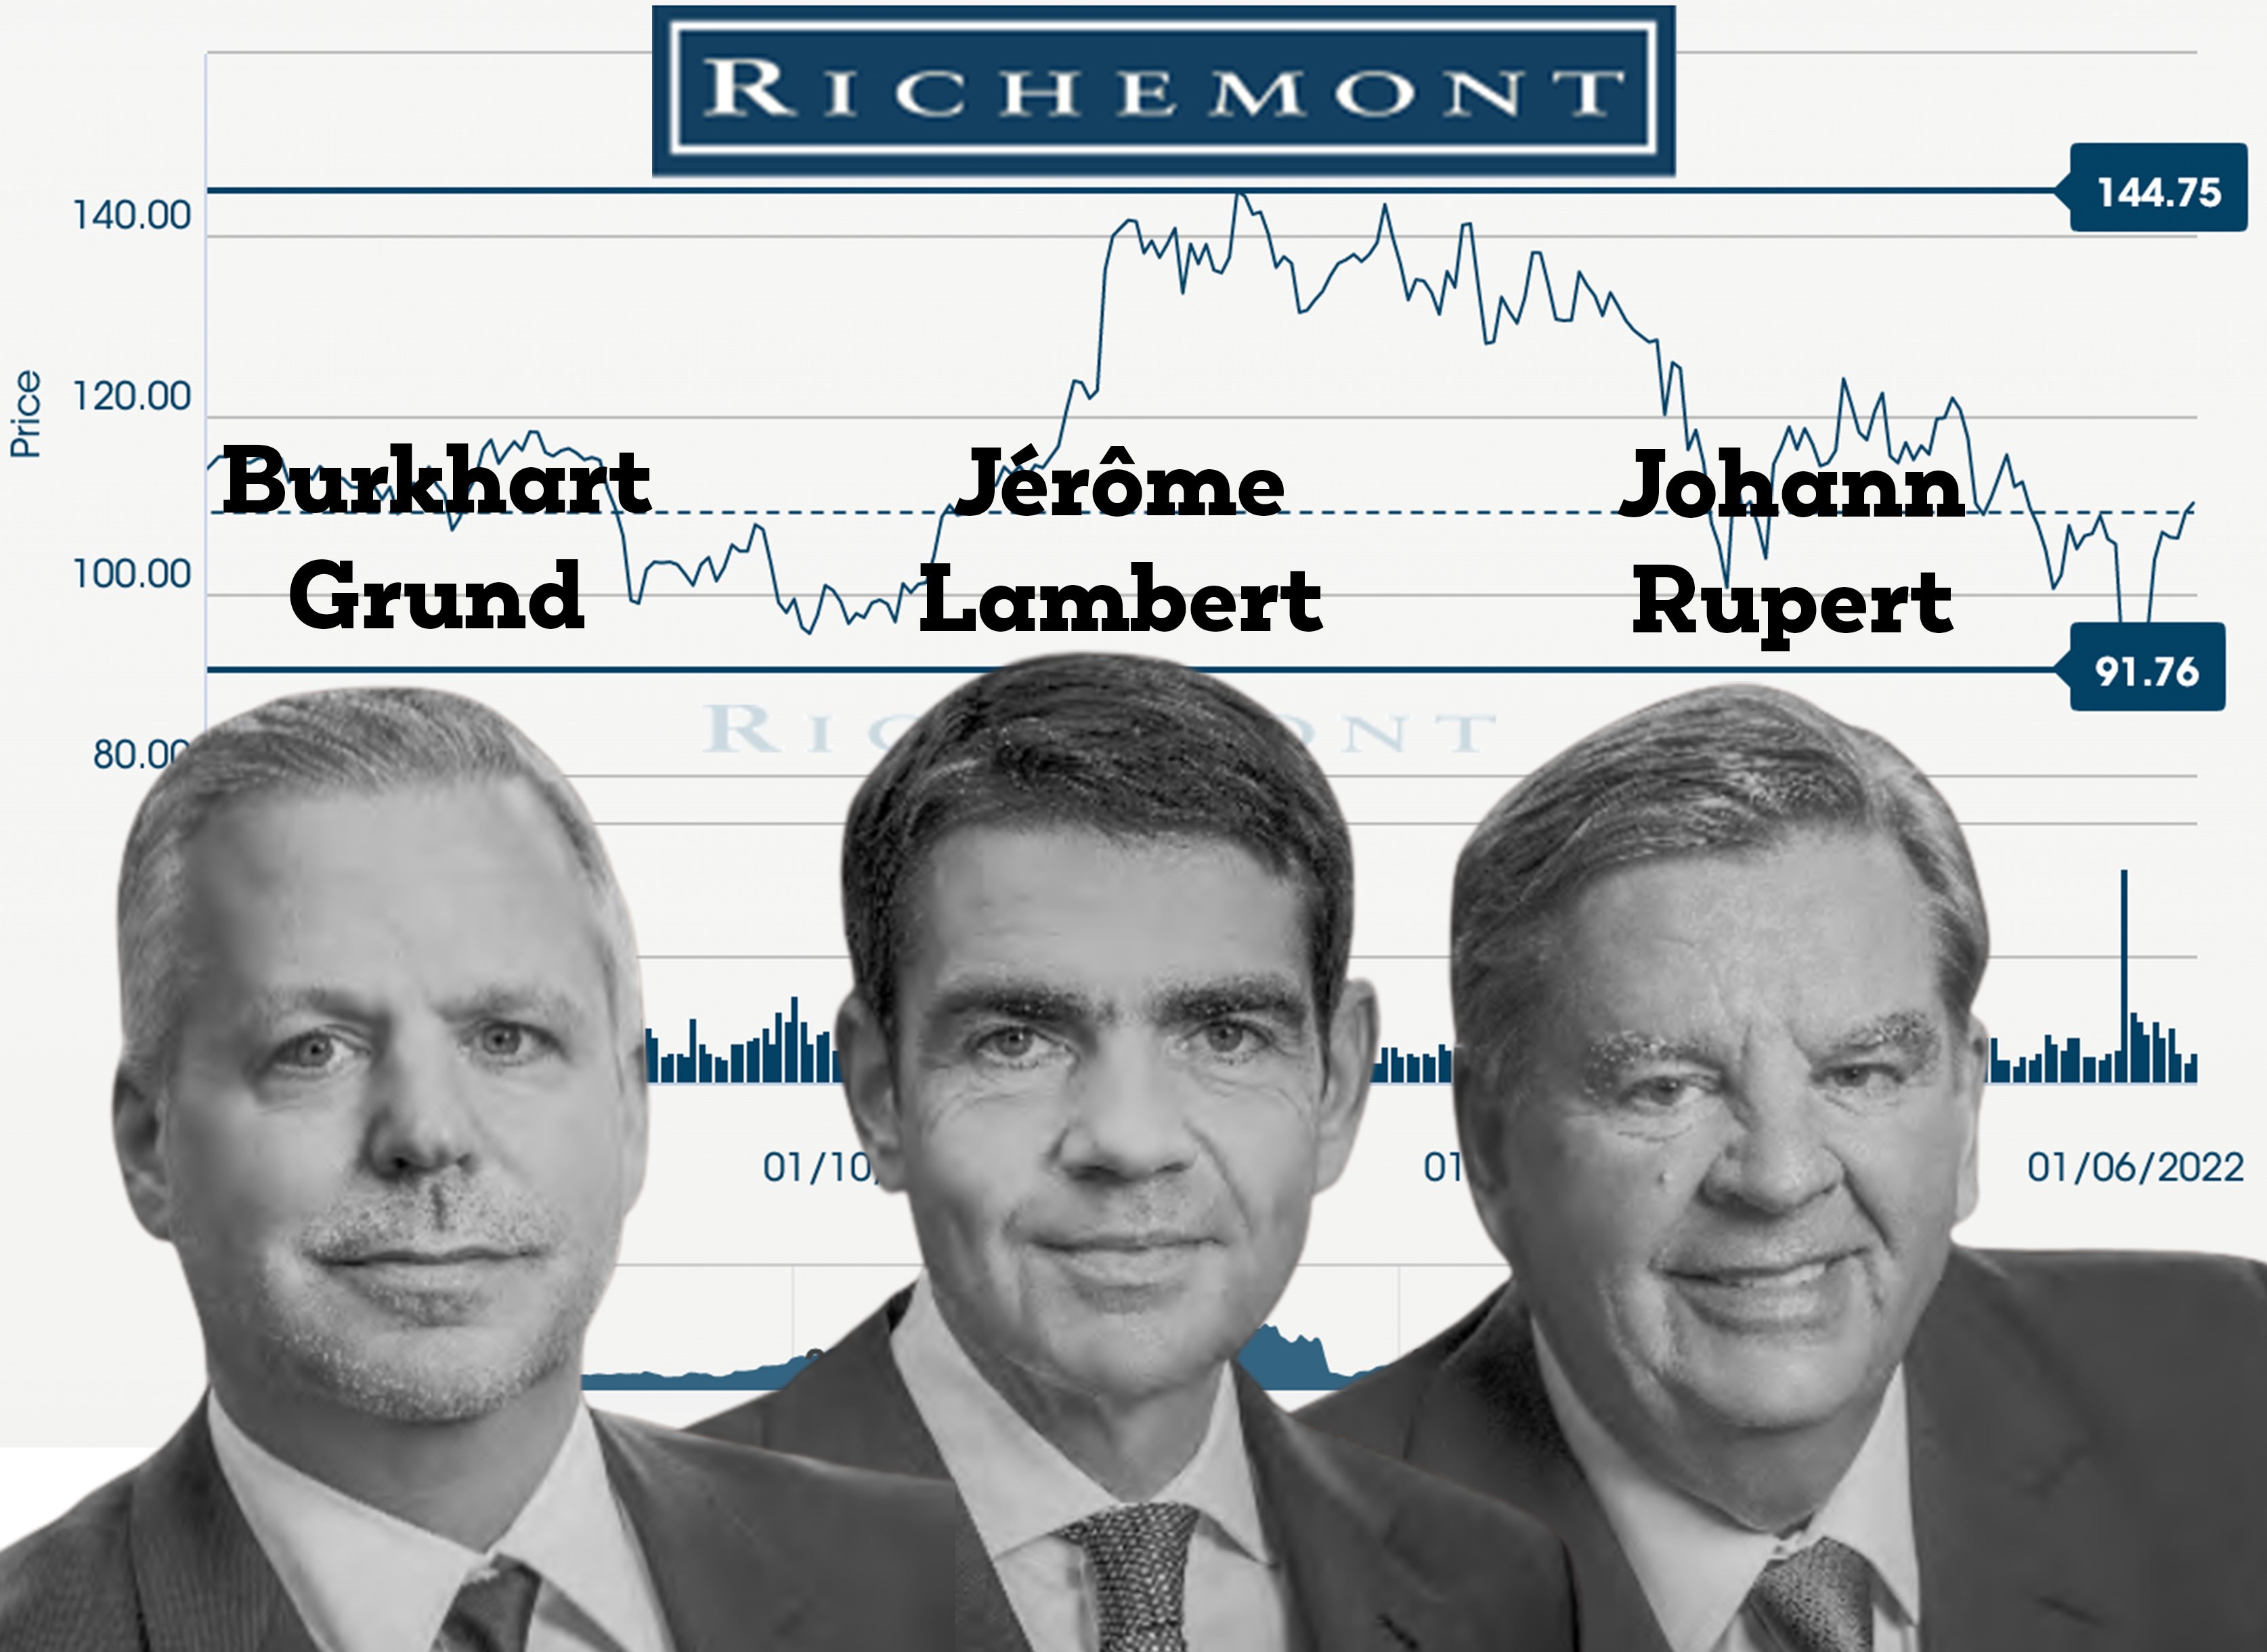 Richemont raises executive pay